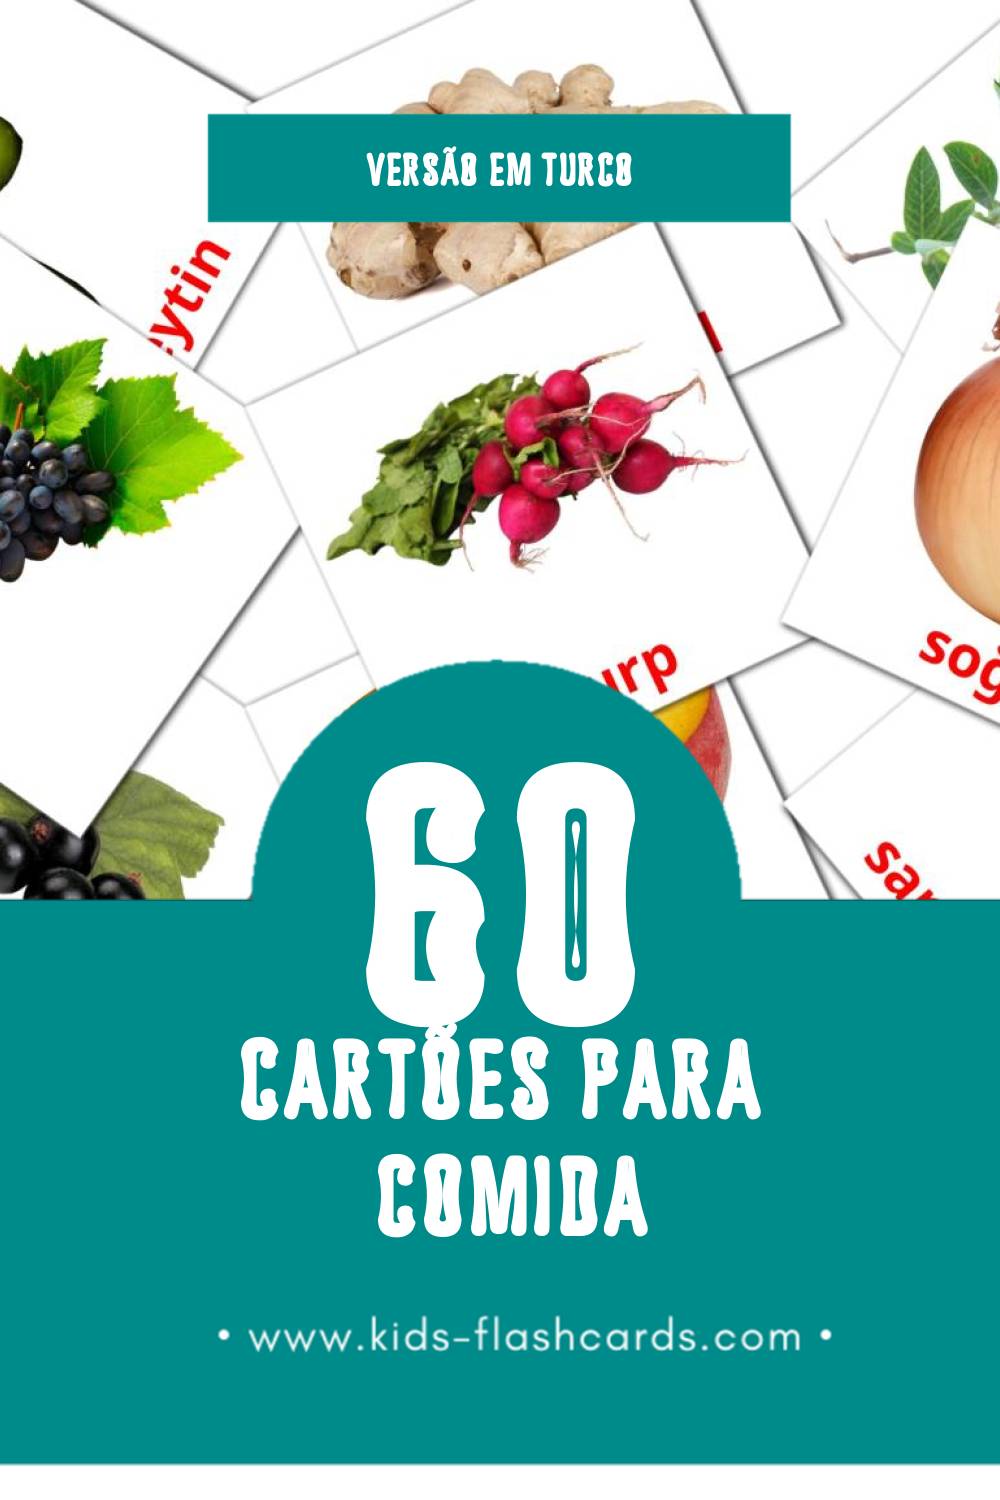 Flashcards de gıda Visuais para Toddlers (60 cartões em Turco)